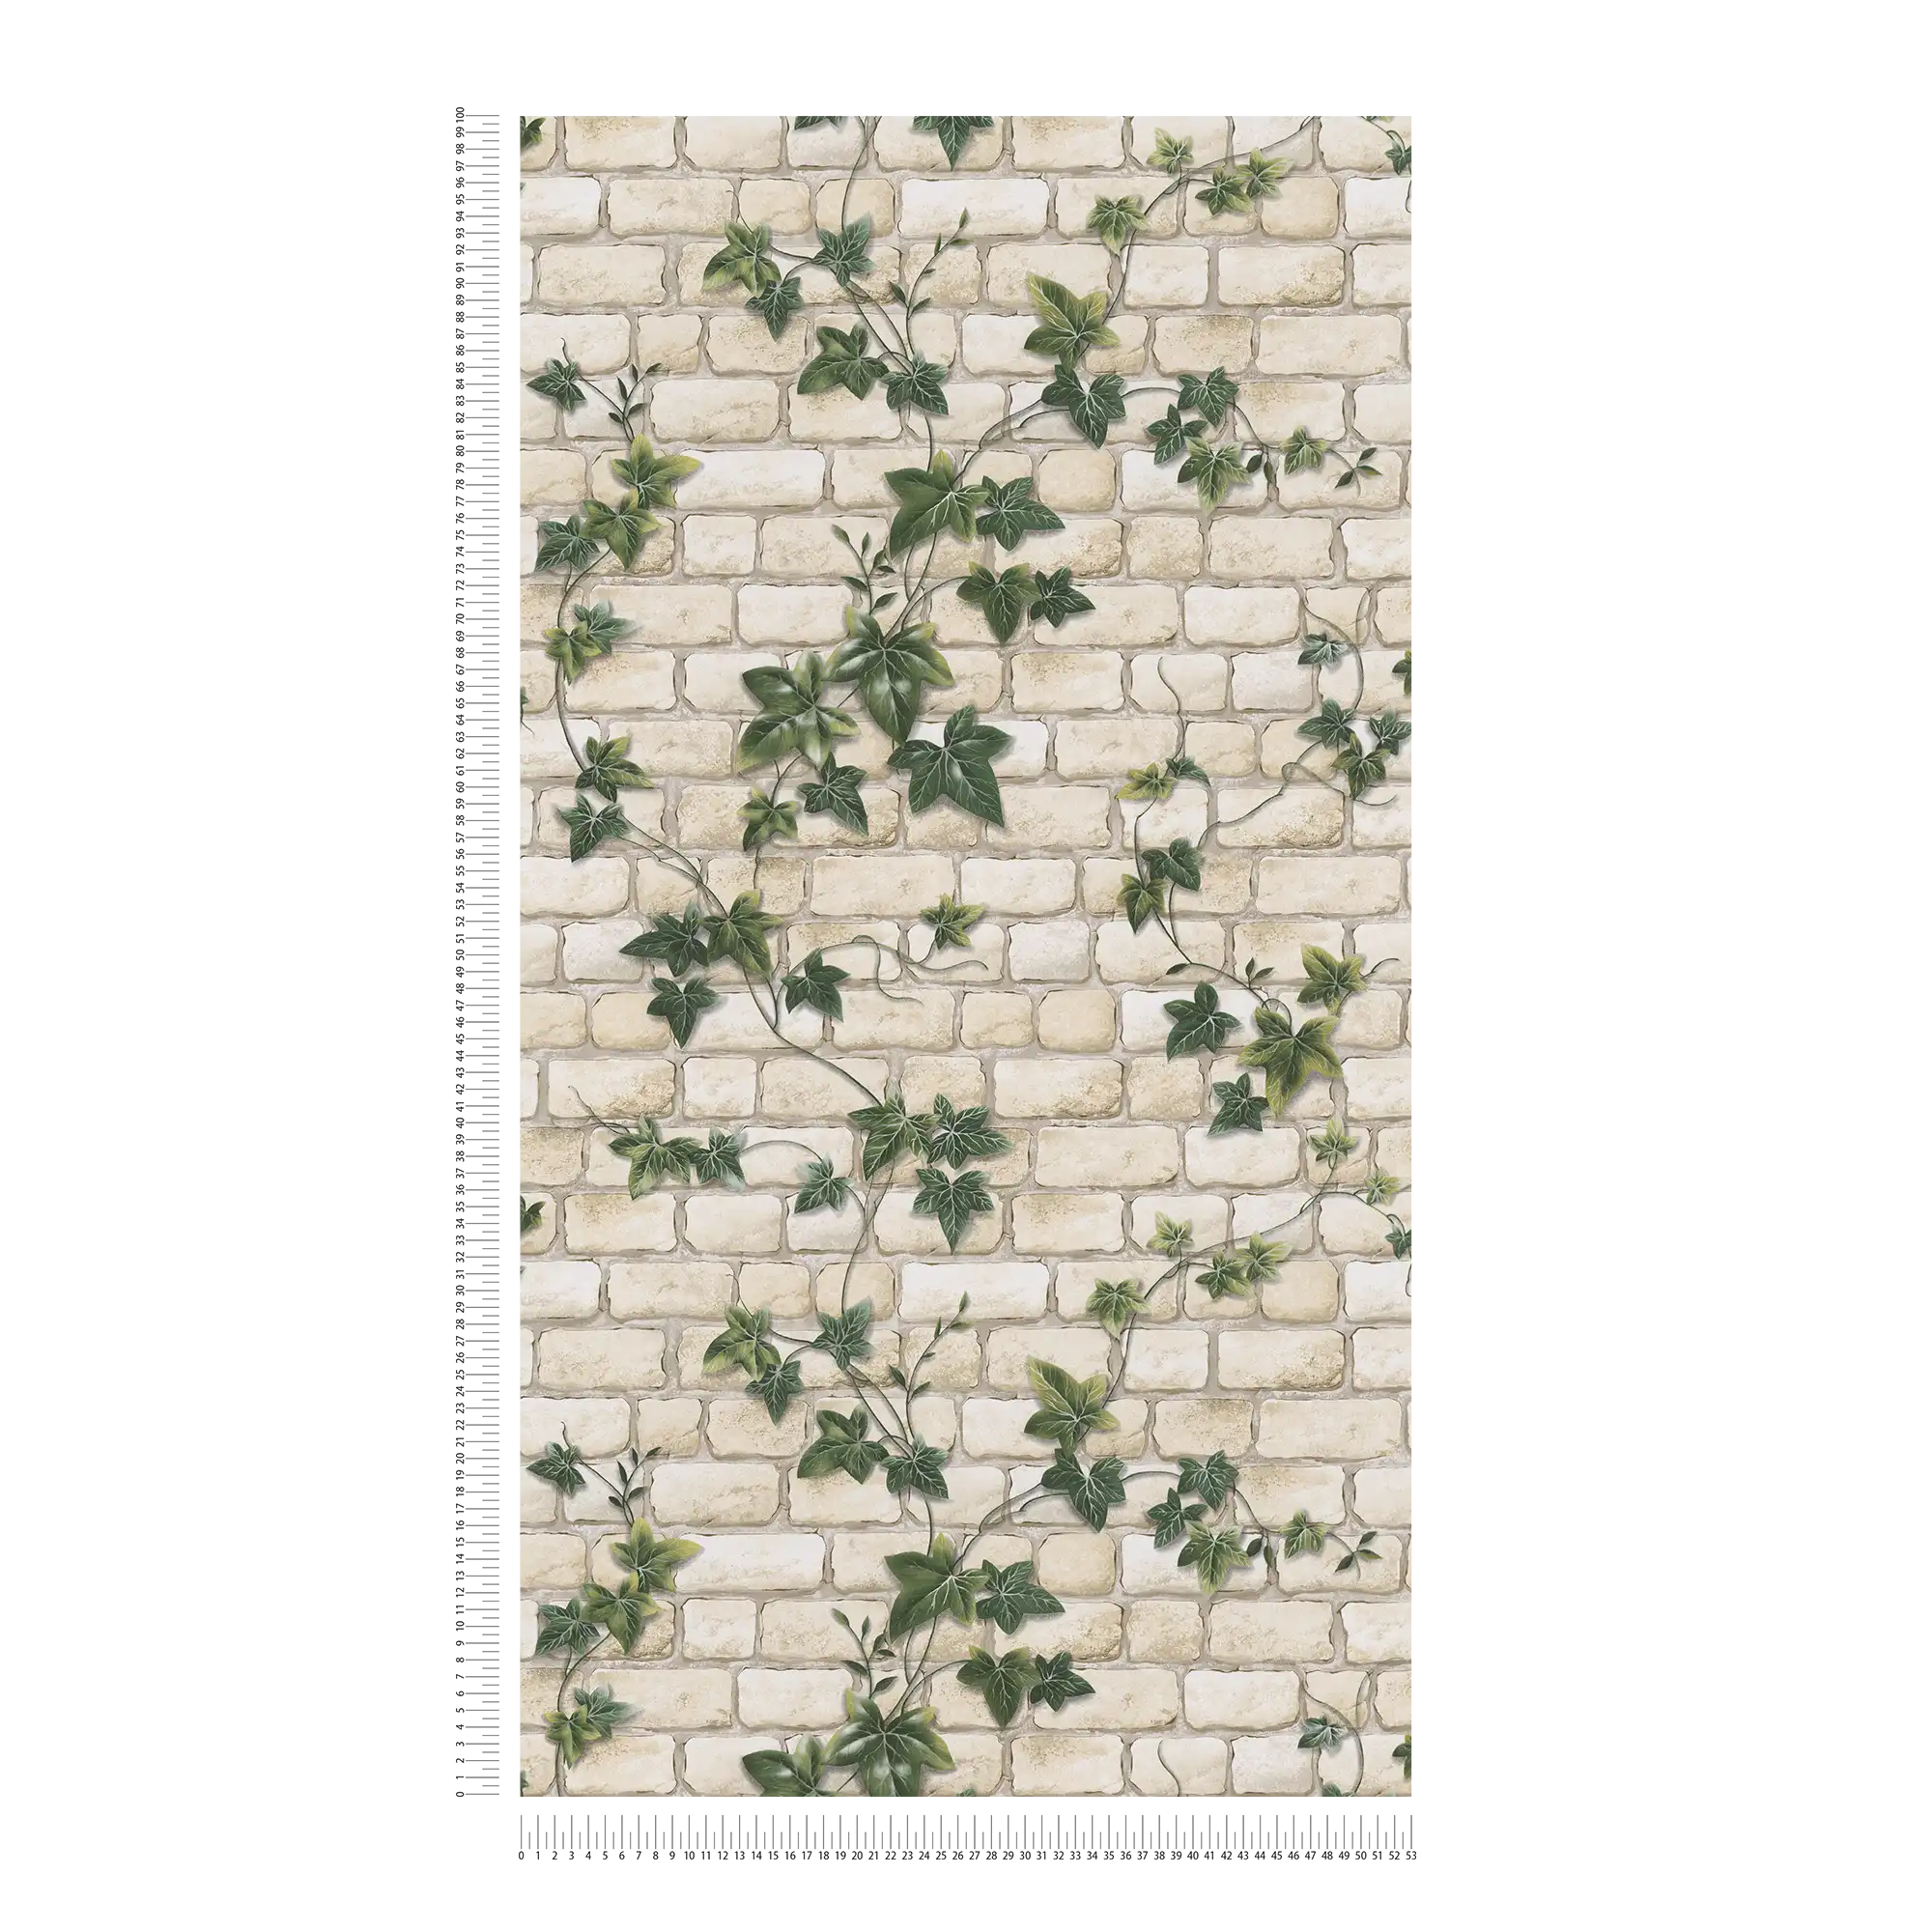             Carta da parati con mattoni e tralci di edera, aspetto pietra - bianco, verde
        